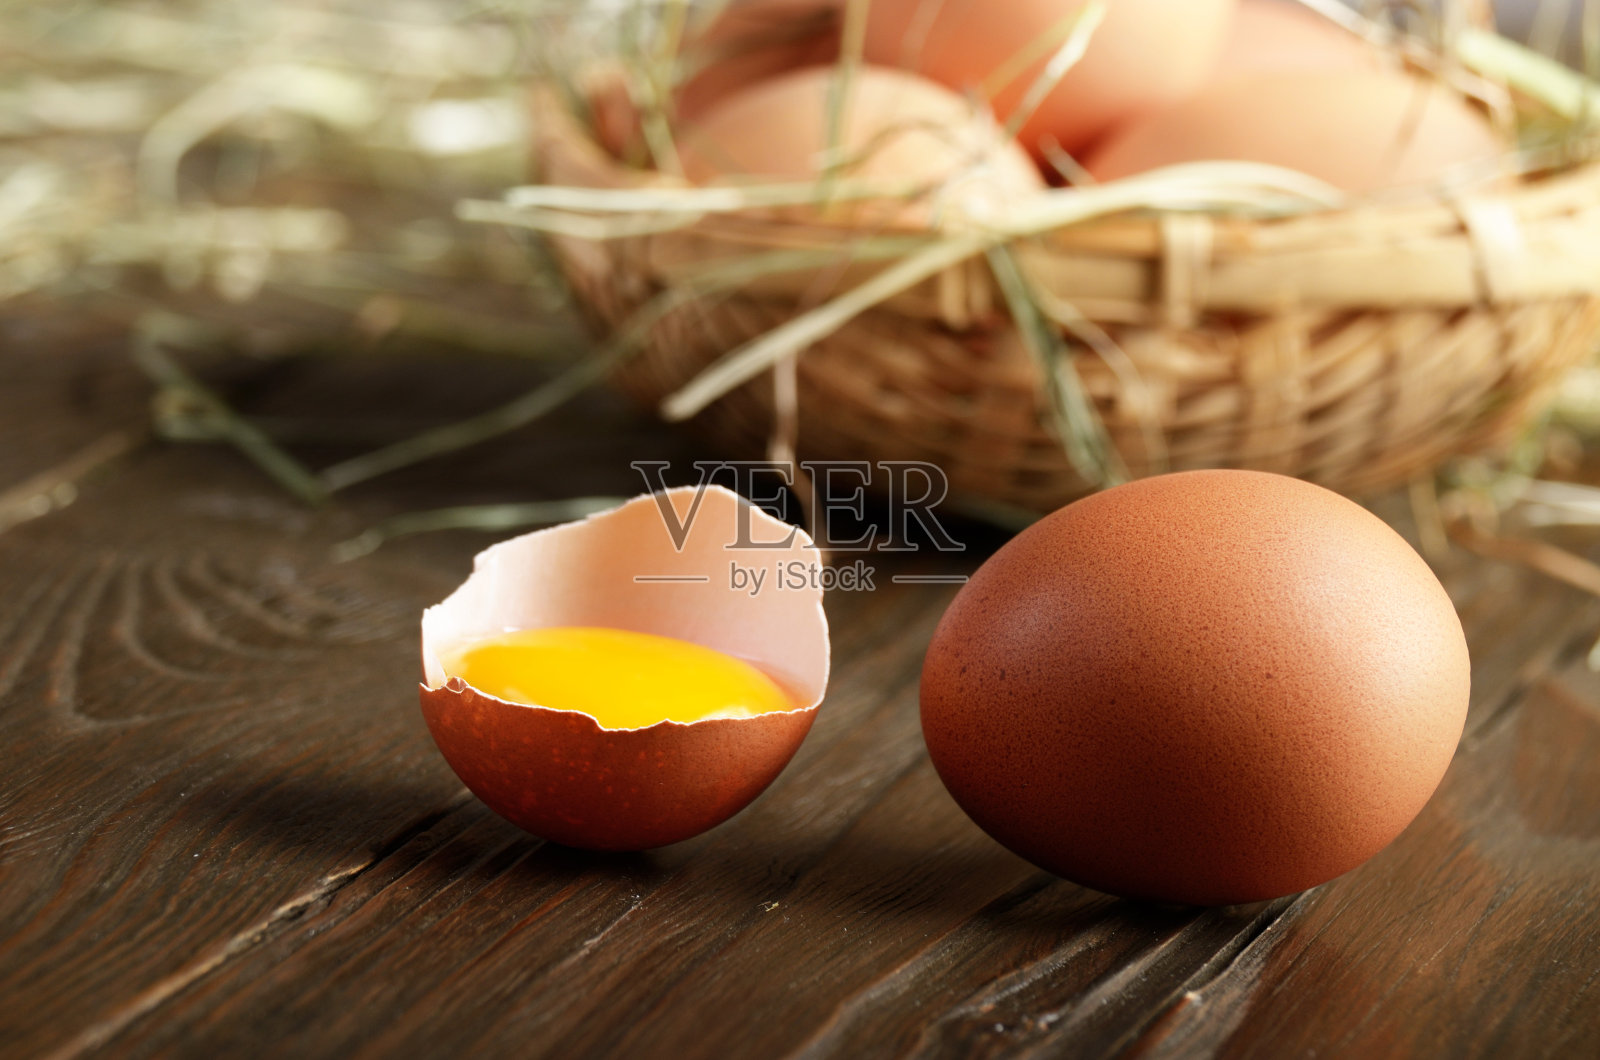 带蛋黄的破鸡蛋和新鲜的棕色有机鸡蛋放在木桌上照片摄影图片